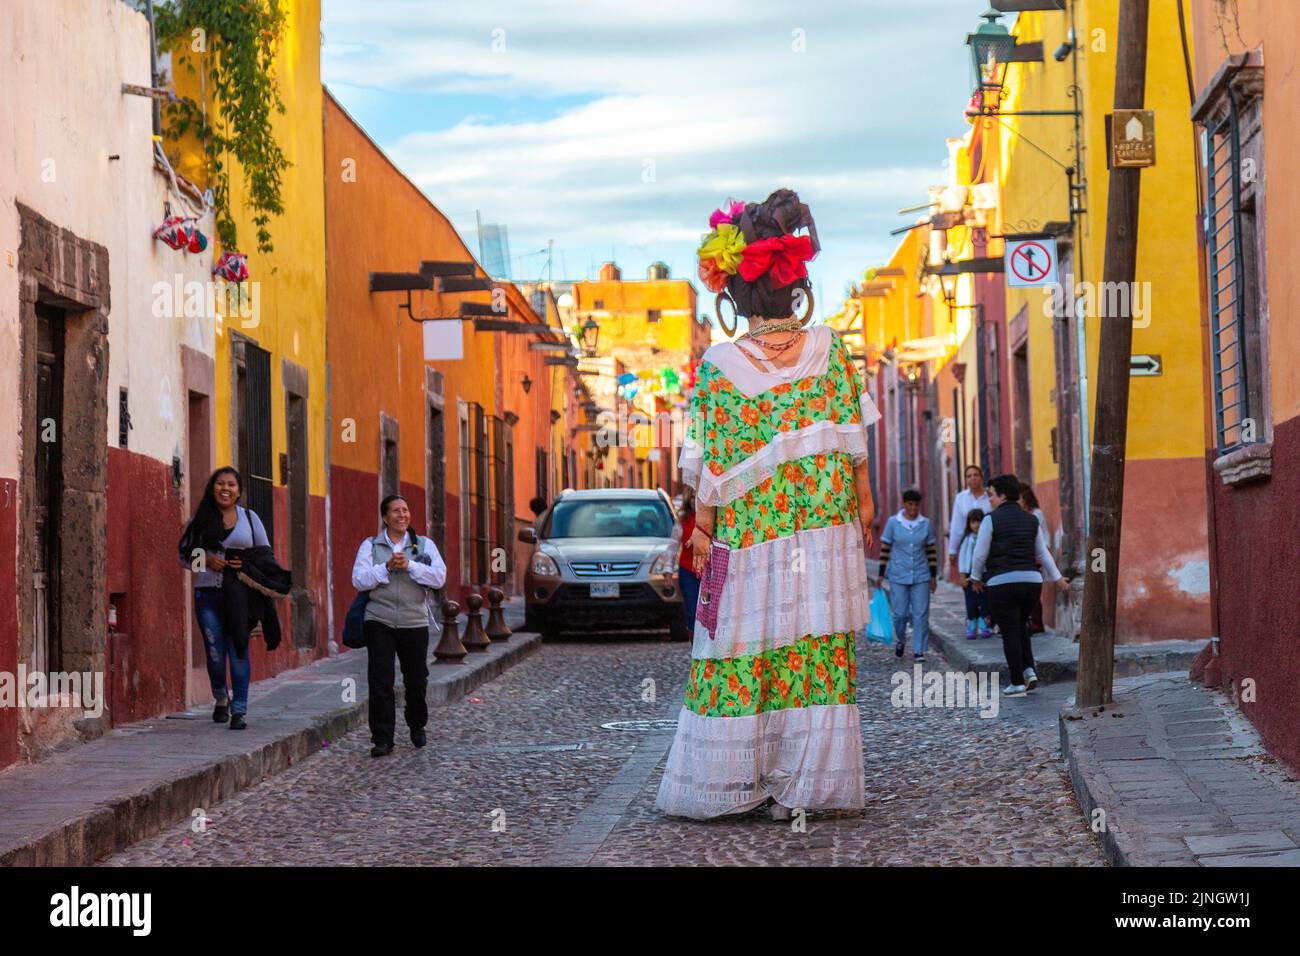 La gente reacciona al ver un mojiganga, o marioneta gigante hecha del papier mâché mientras camina por el centro histórico de la ciudad de San Miguel de Allende, México. Foto de stock